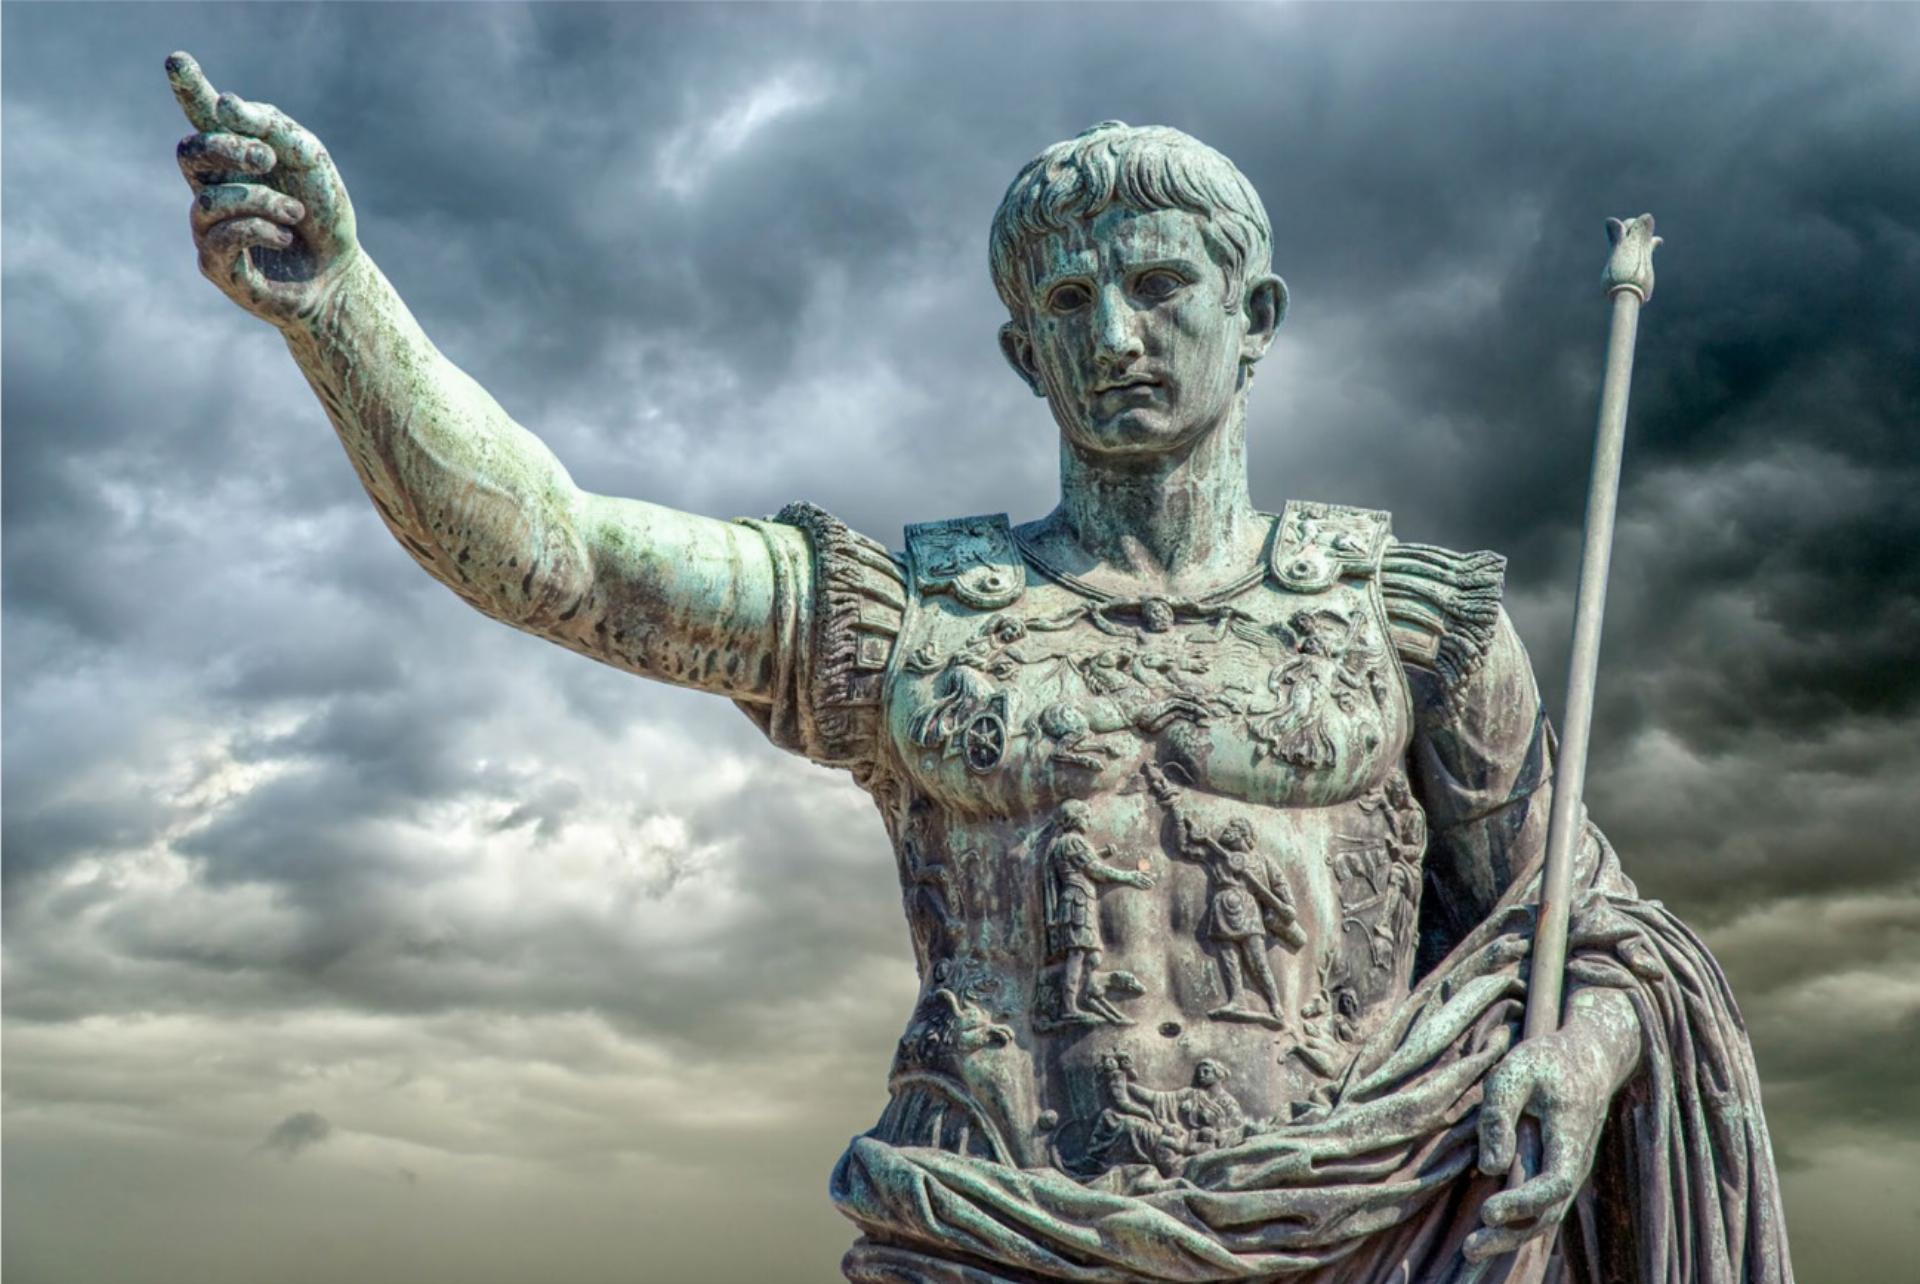 Augustus, der erste römische Kaiser, war von 31 v. Chr. bis 14 n. Chr. Alleinherrscher des Römischen Reiches. Von ihm hat der Monat August seinen Namen. Das Bild zeigt die Augustusstatue an der Via dei Fori Imperiali in Rom. BILD: FABIOMAX / STOCK.ADOBE.COM